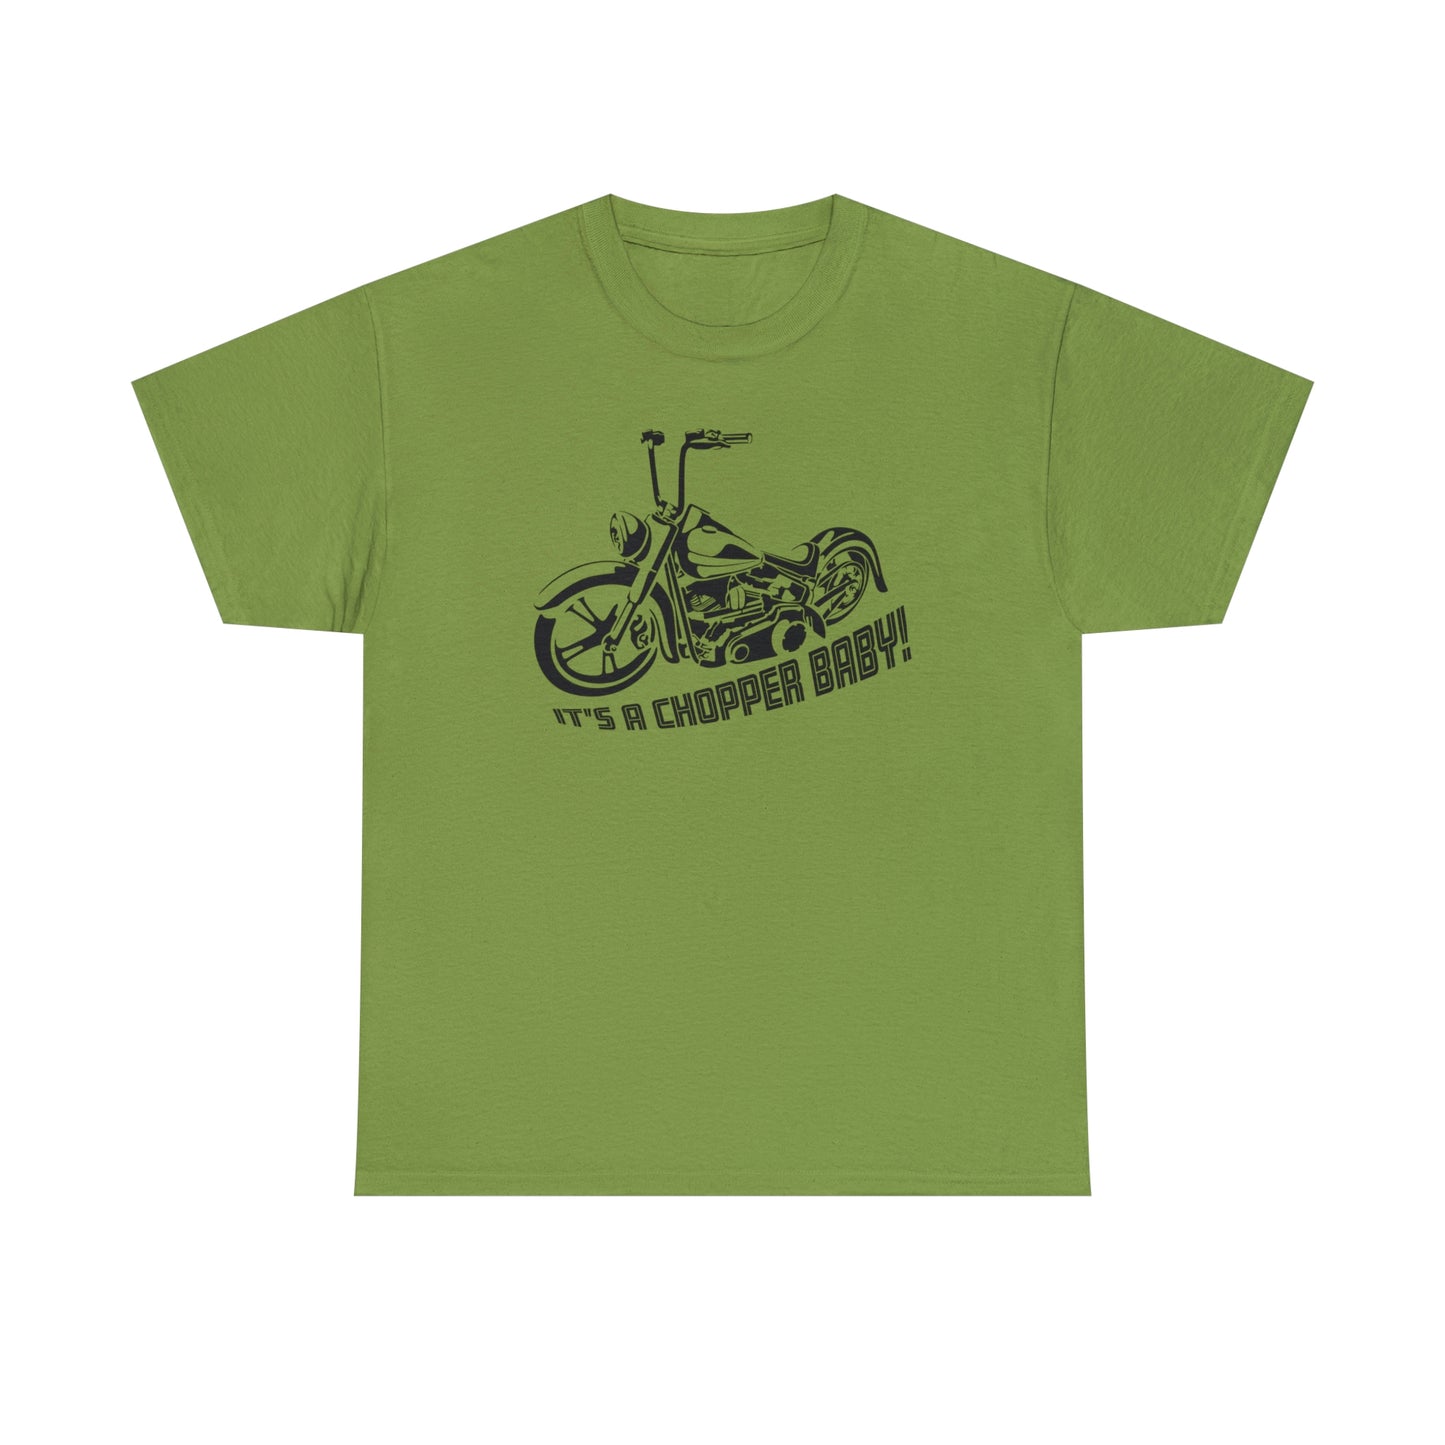 Chopper T-Shirt For Motorcyclist T Shirt For Biker TShirt For Biker Babe Shirt For Motorcycle Enthusiast Gift For Biker T-Shirt